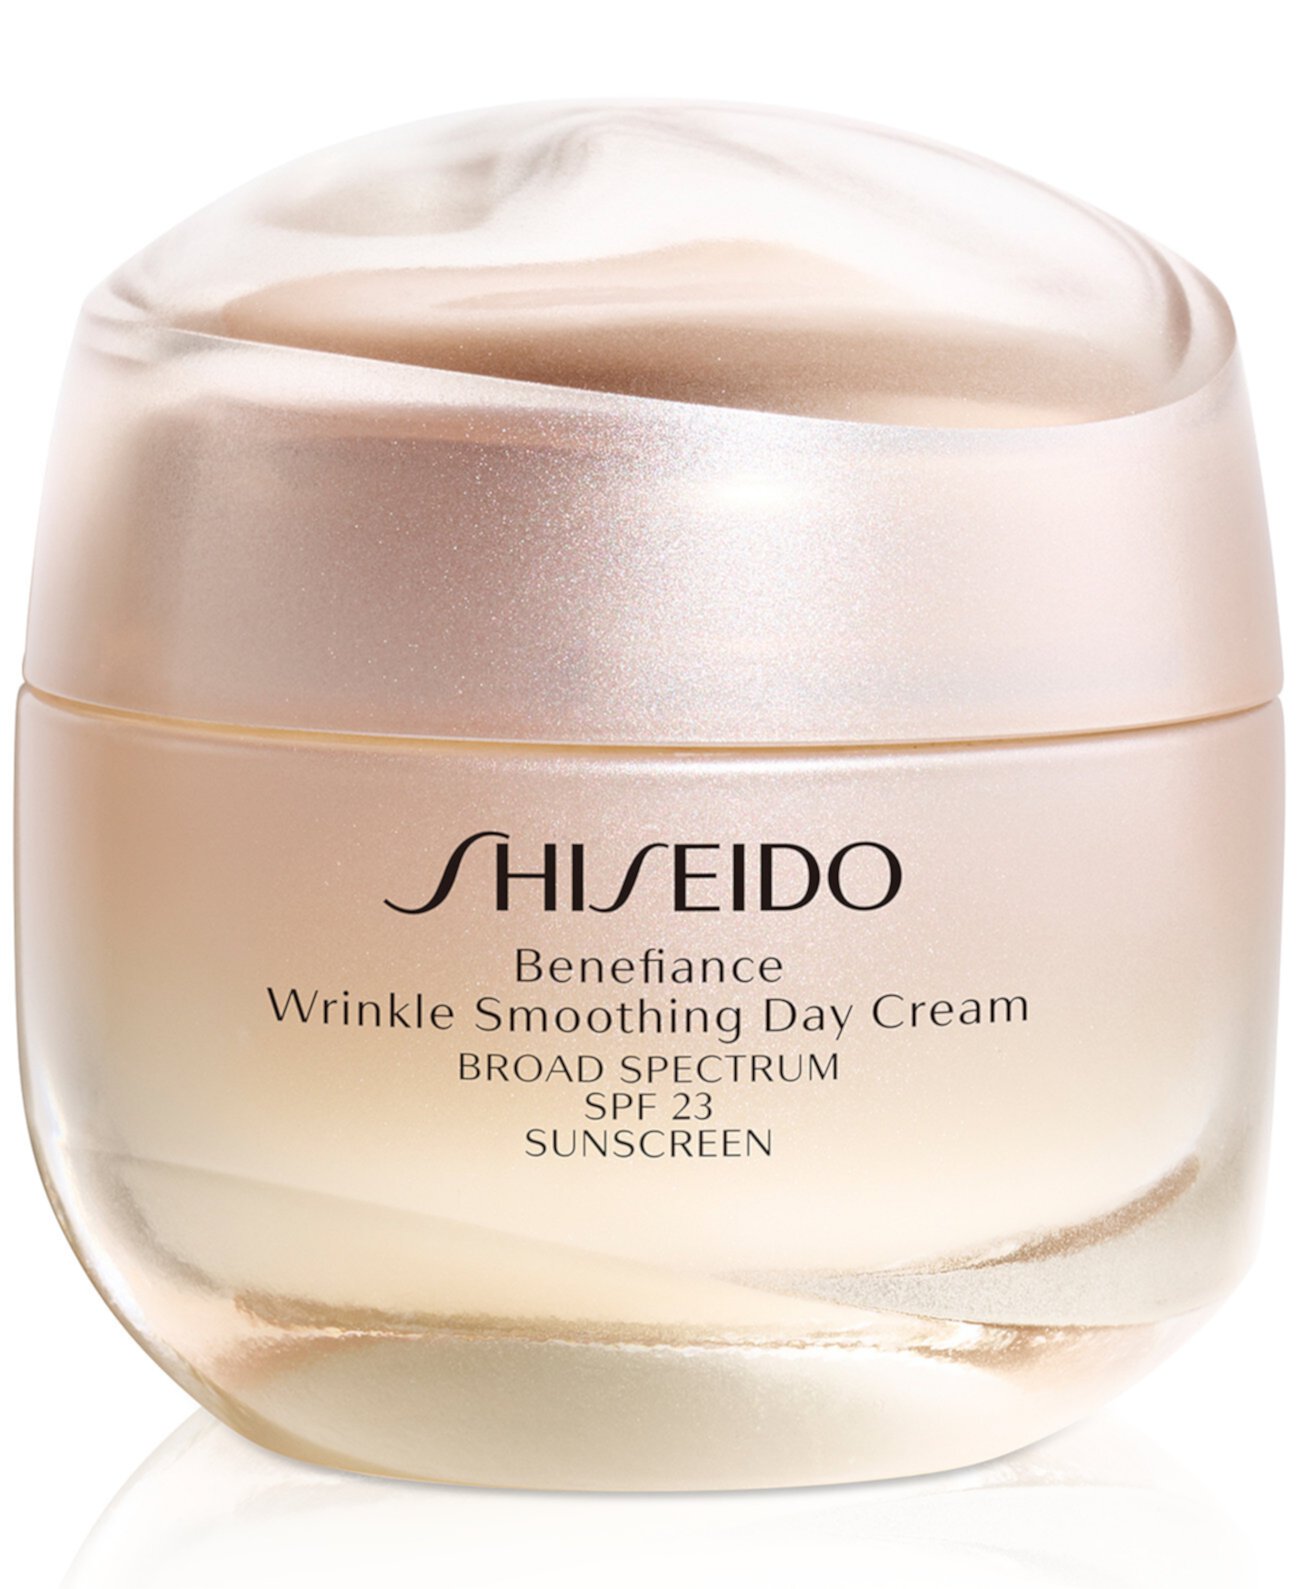 Shiseido Wrinkle Smoothing Cream. Shiseido Benefiance. Shiseido Benefiance Wrinkle Smoothing Cream enriched. Shiseido facial Cotton. Shiseido benefiance wrinkle smoothing